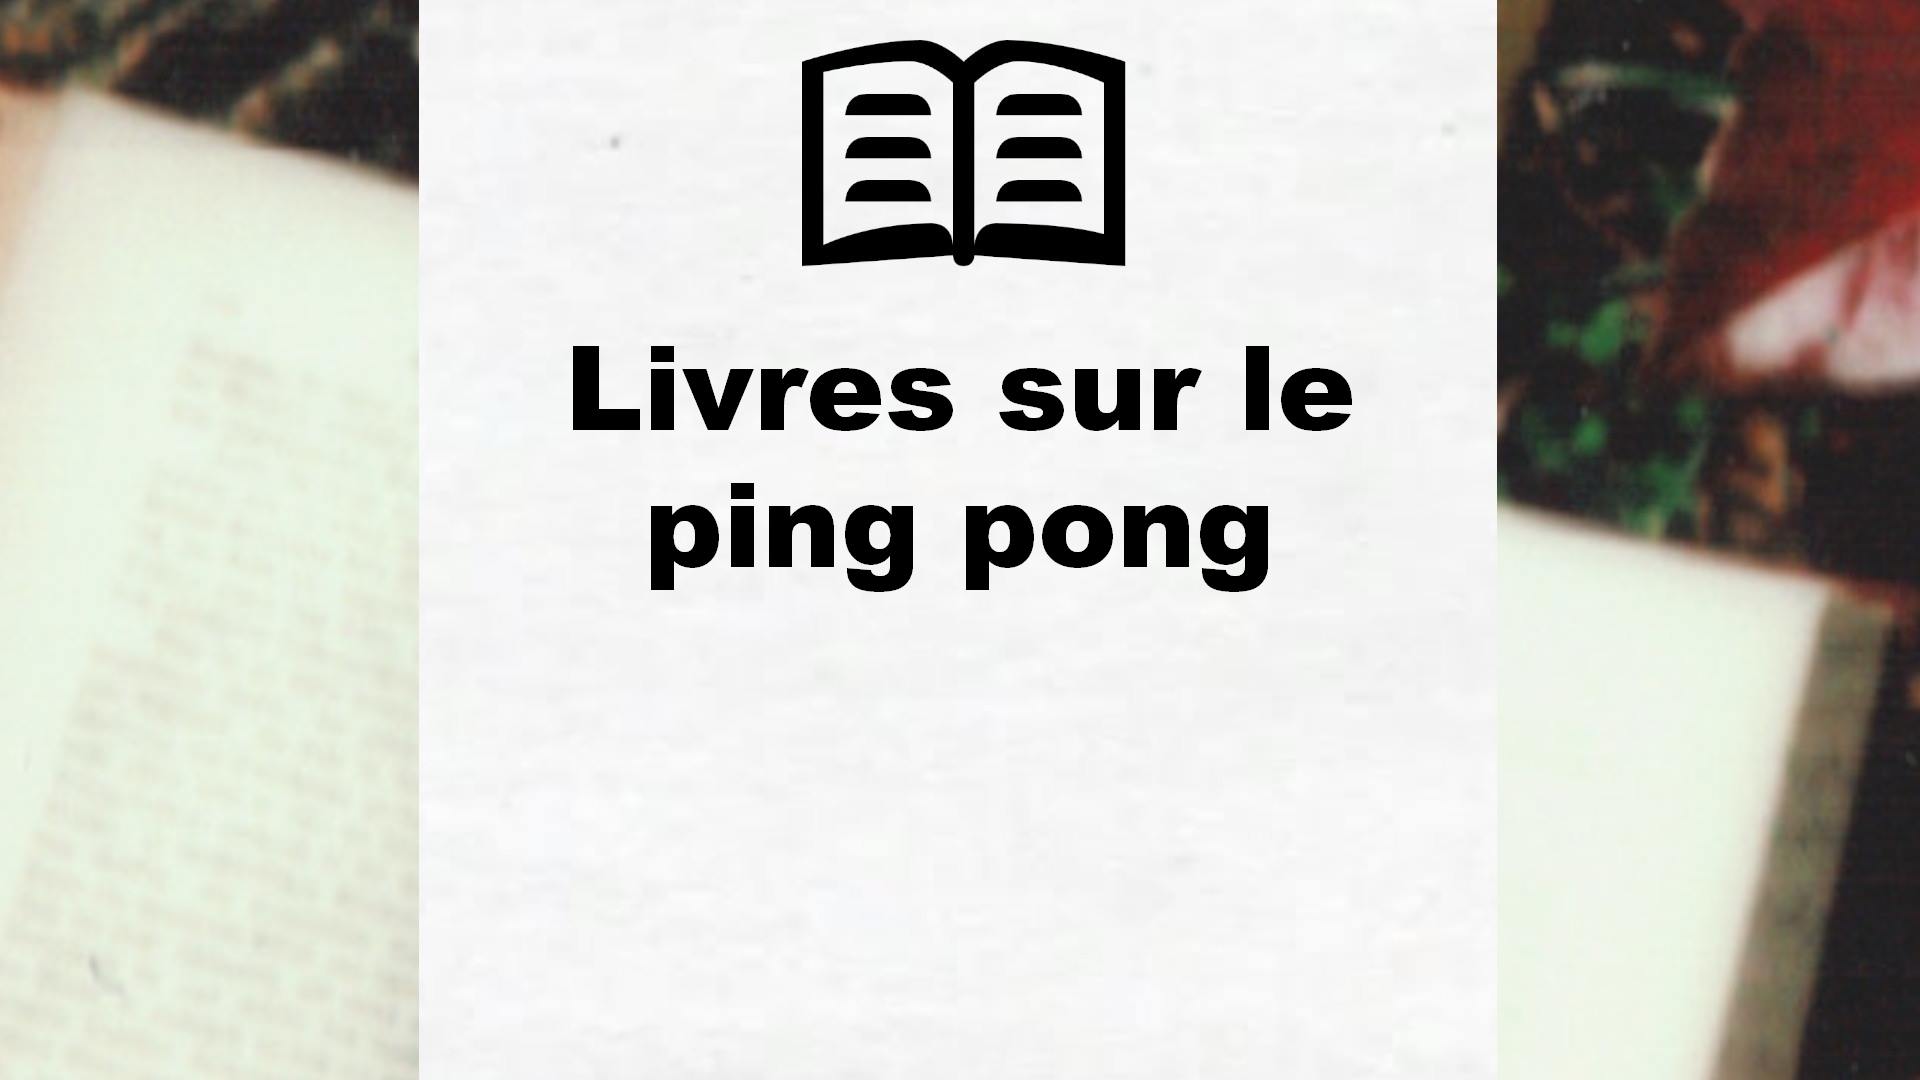 Livres sur le ping pong